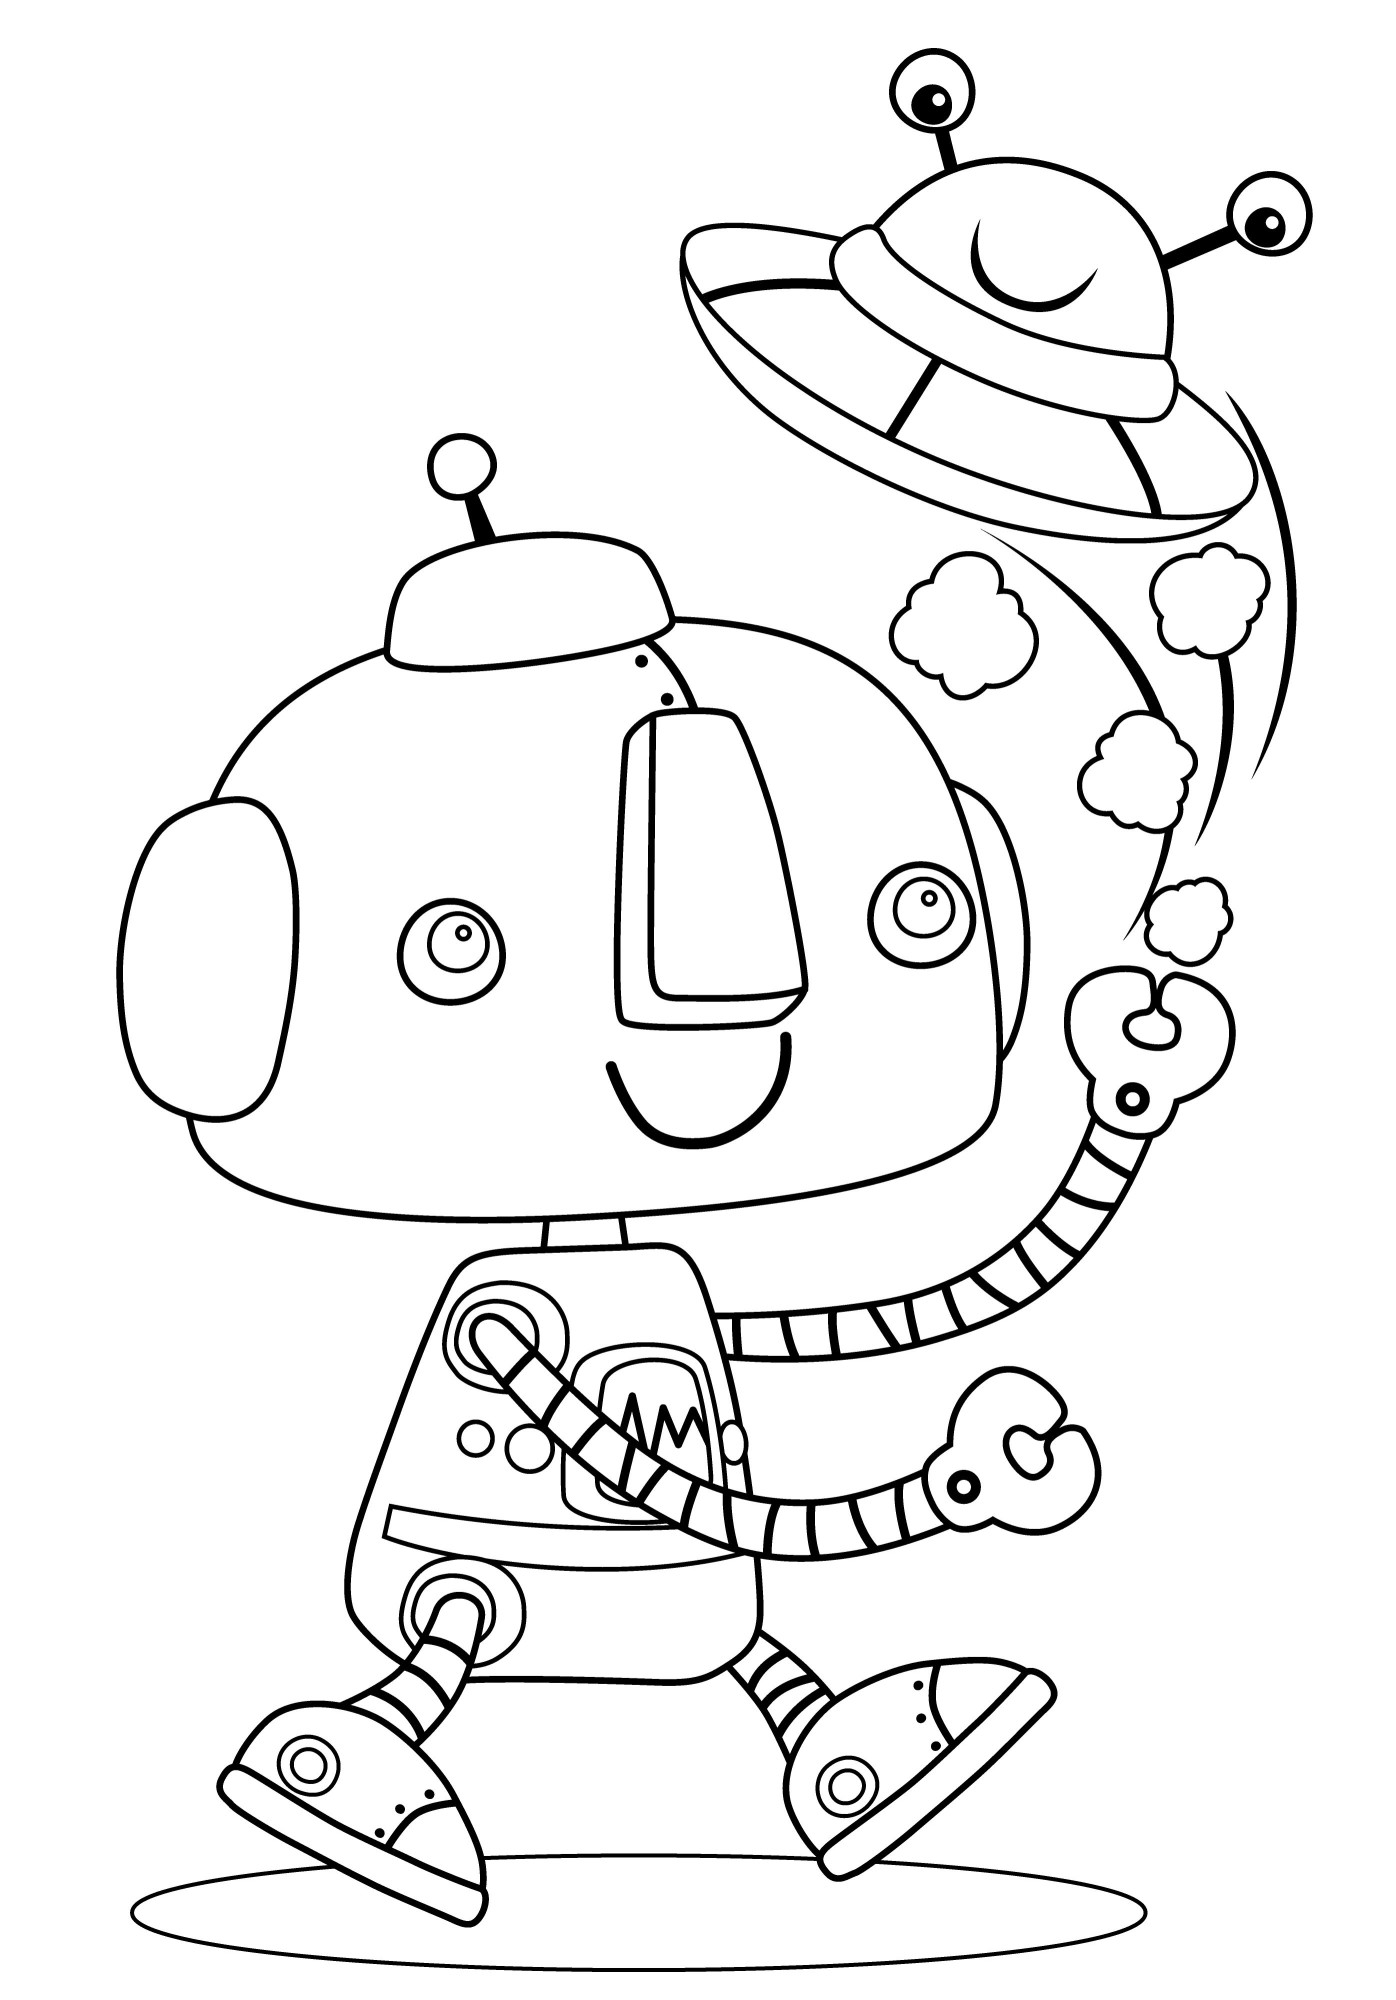 Раскраска для детей: робот-друг и робот-тарелка